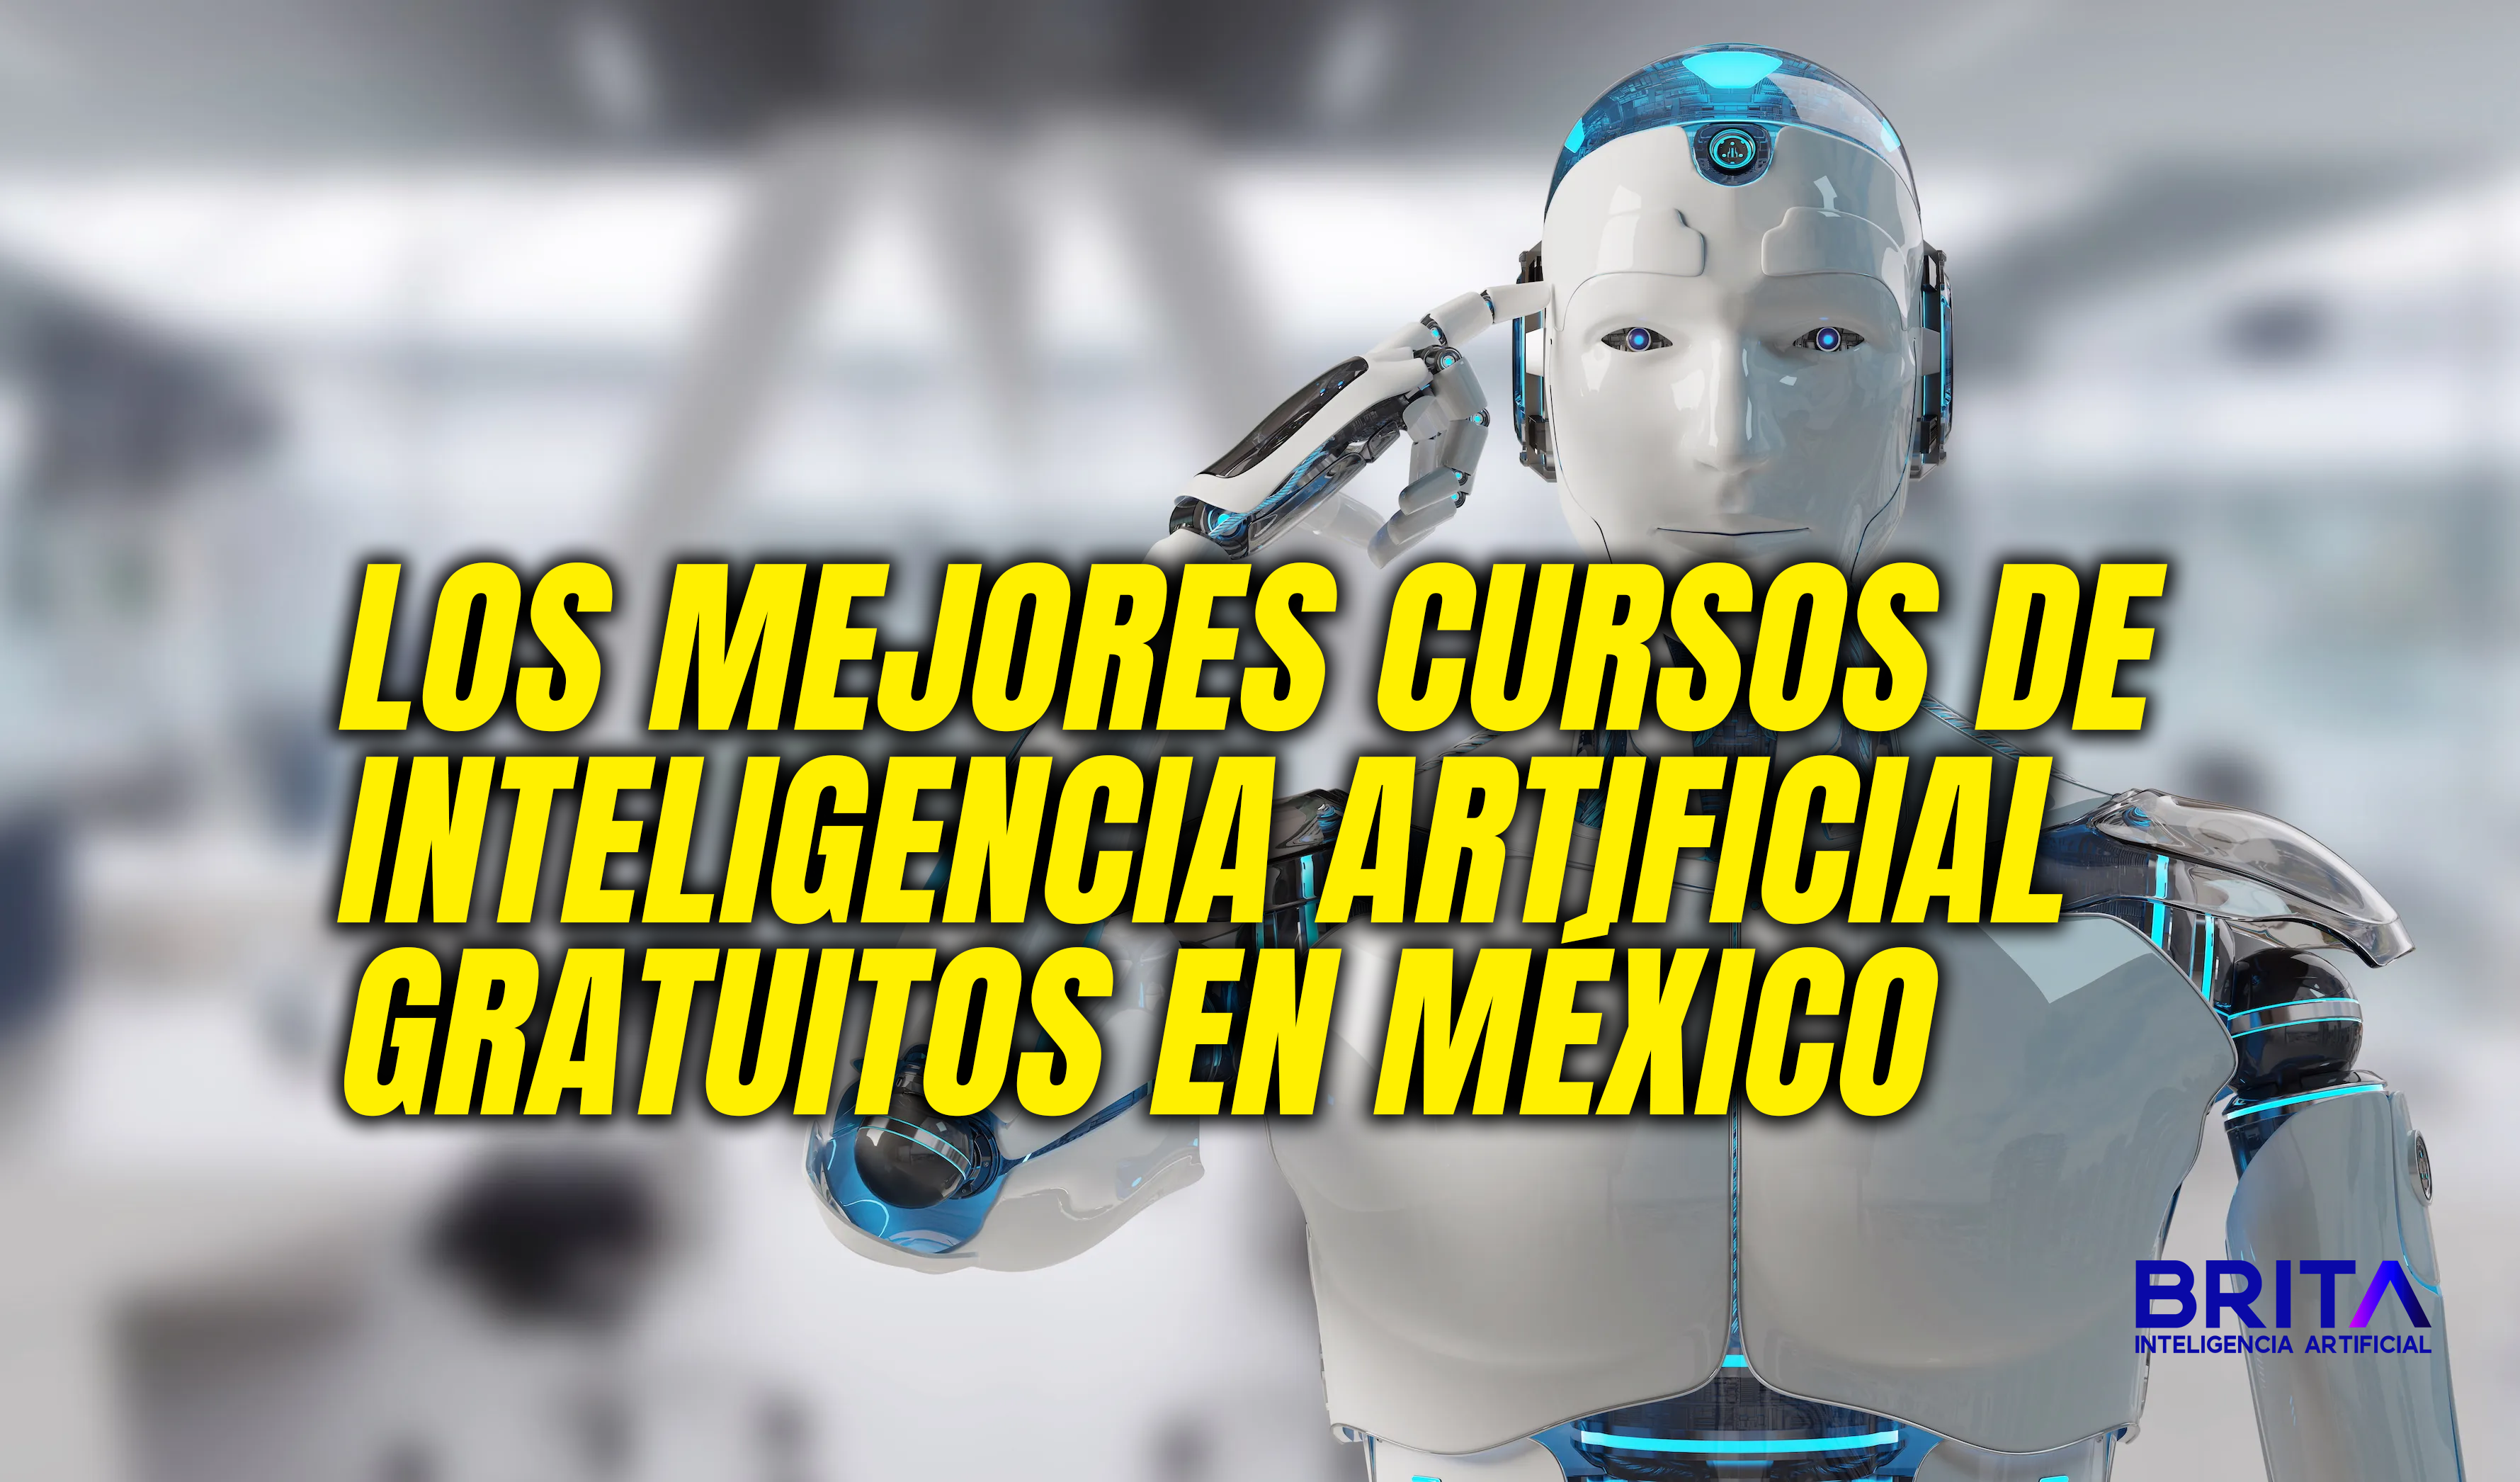 Los mejores cursos de inteligencia artificial gratuitos en México